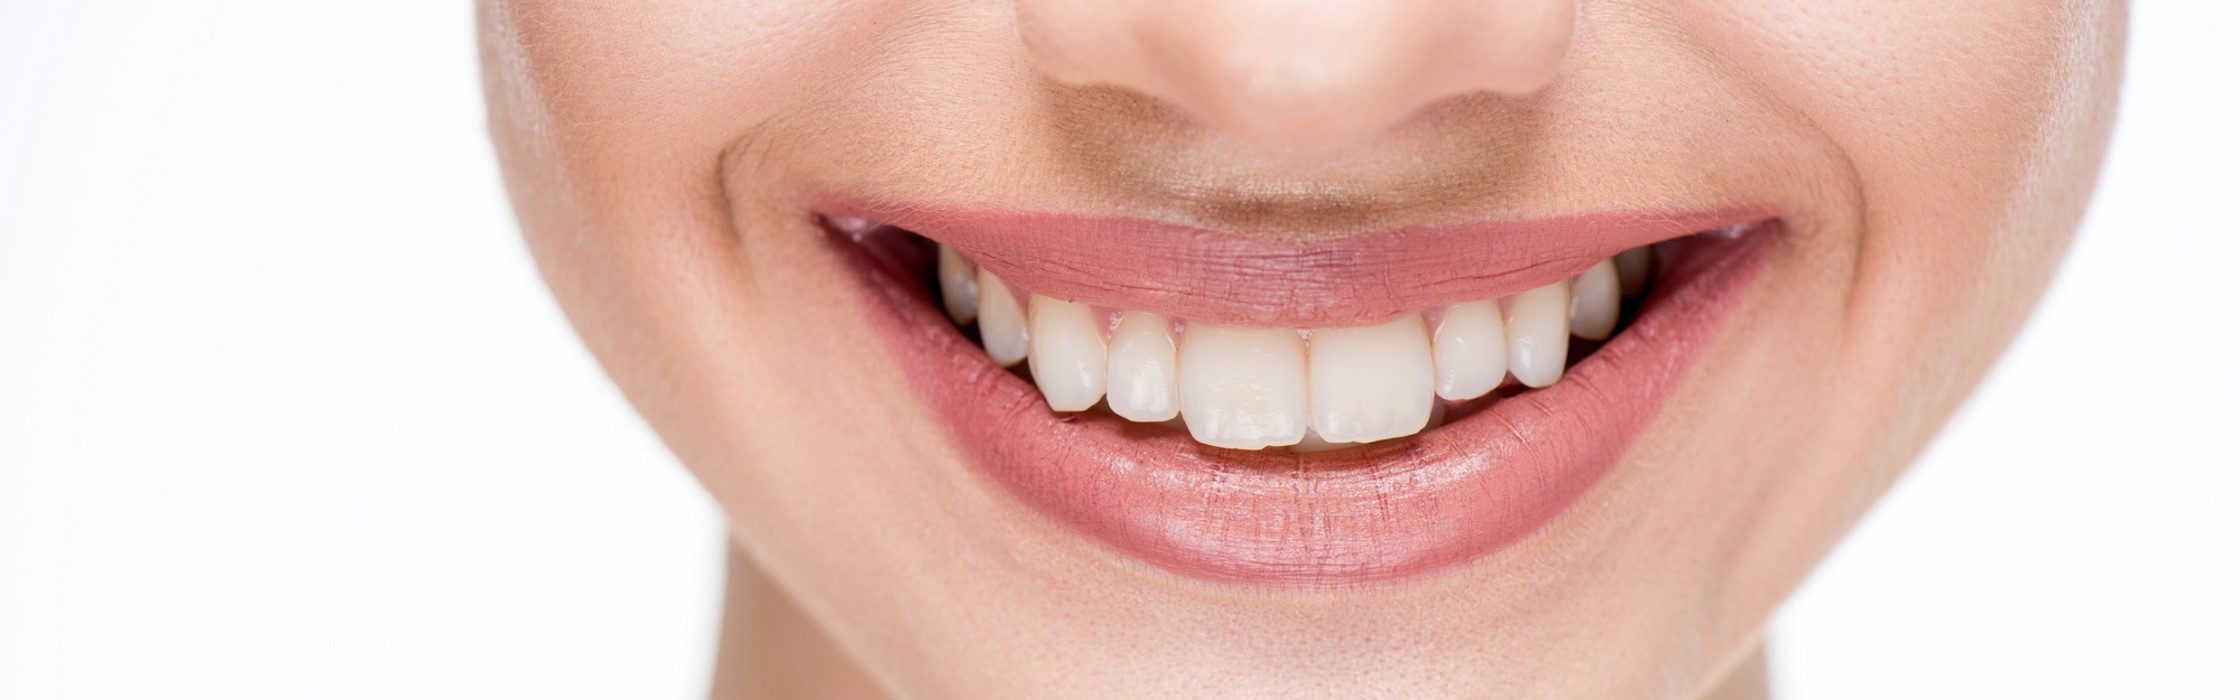 Zahnsanierung: Dauer und Ablauf